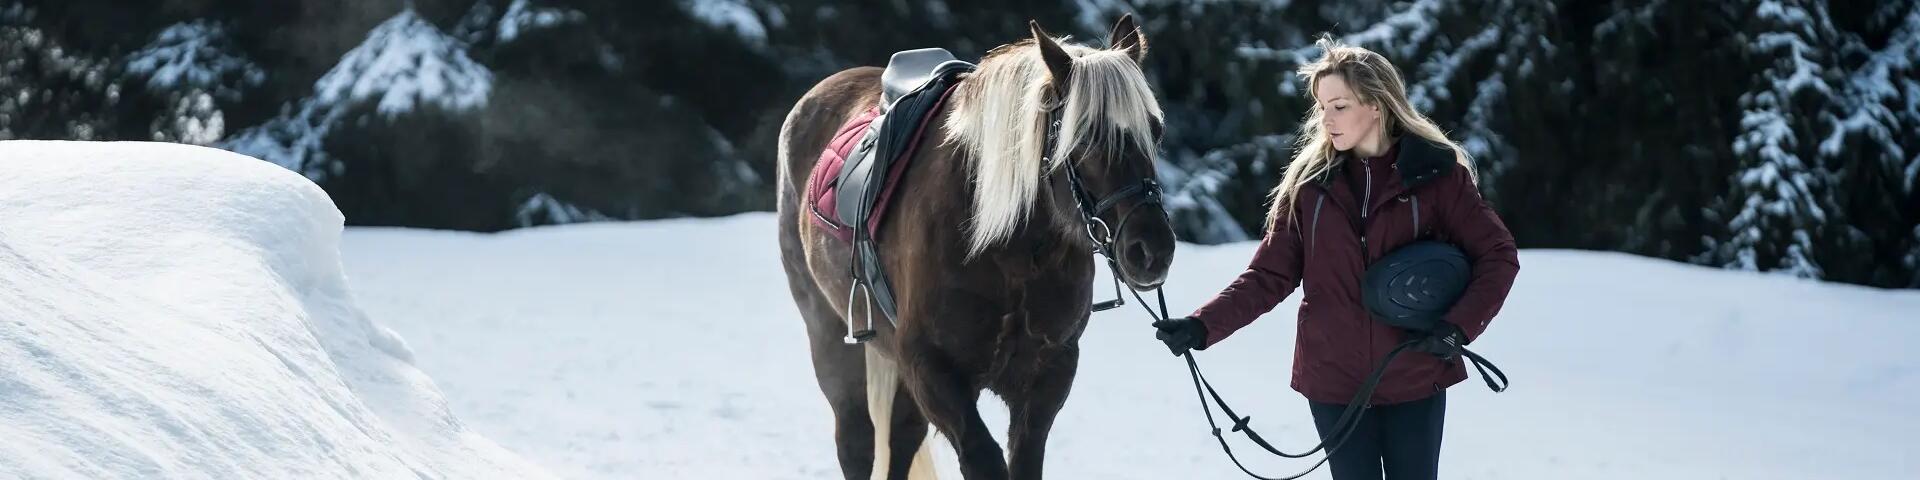 kobieta prowadząca konia zimą